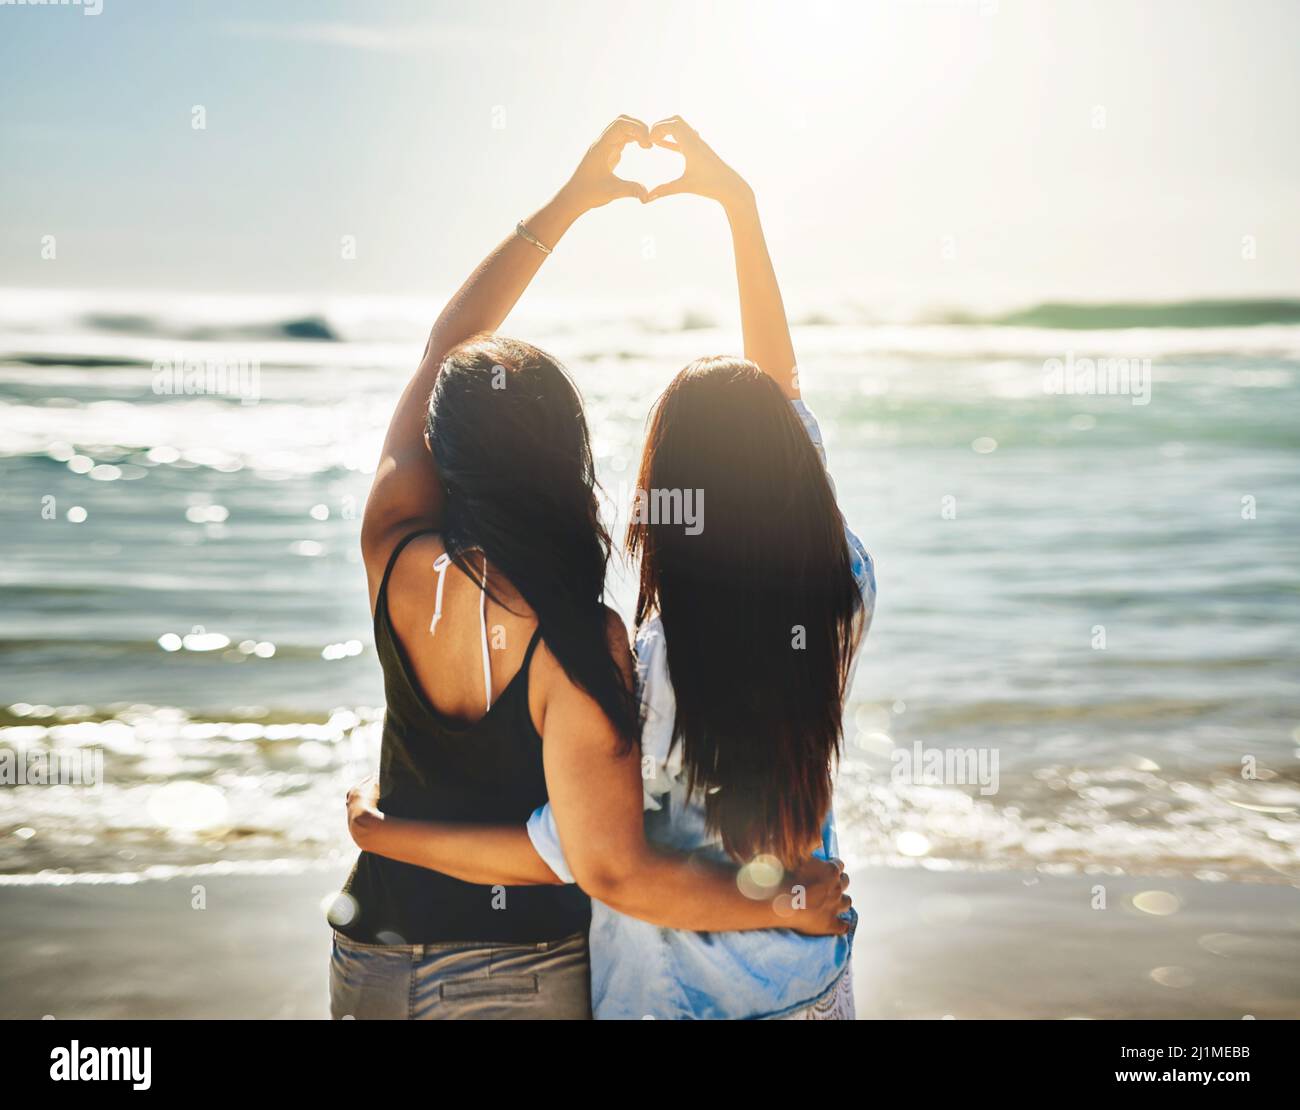 Nous partageons un amour pour les belles choses. Vue arrière de deux amis formant un coeur ensemble sur la plage. Banque D'Images